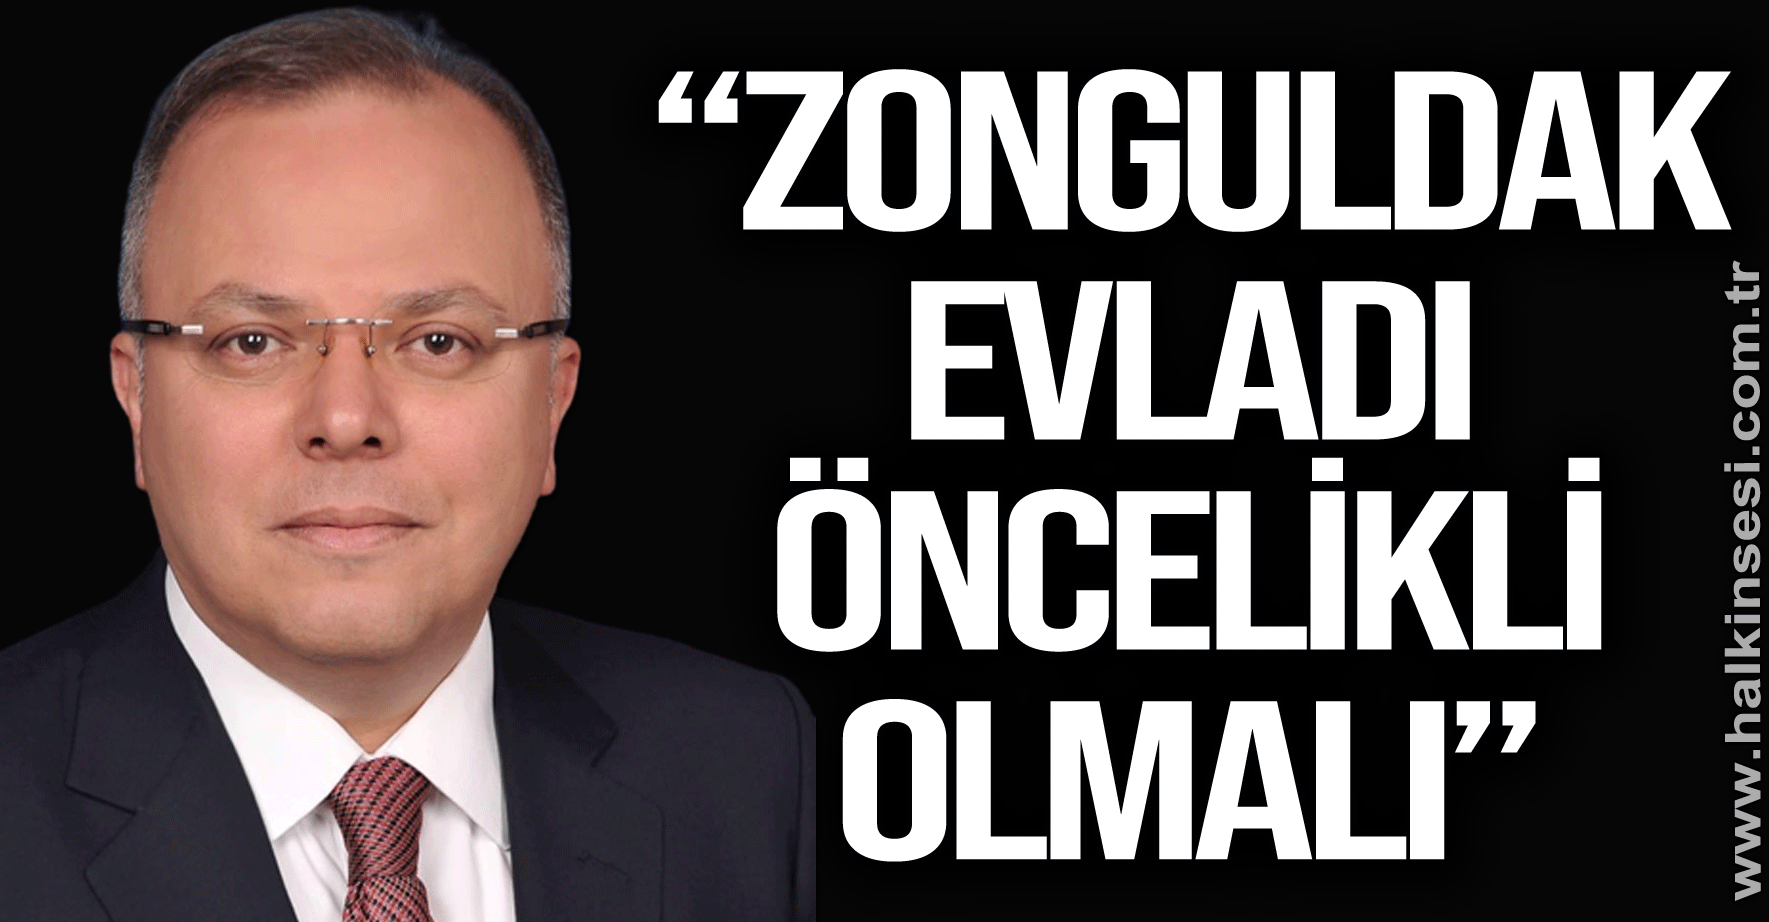 “Zonguldak evladı öncelikli olmalı”